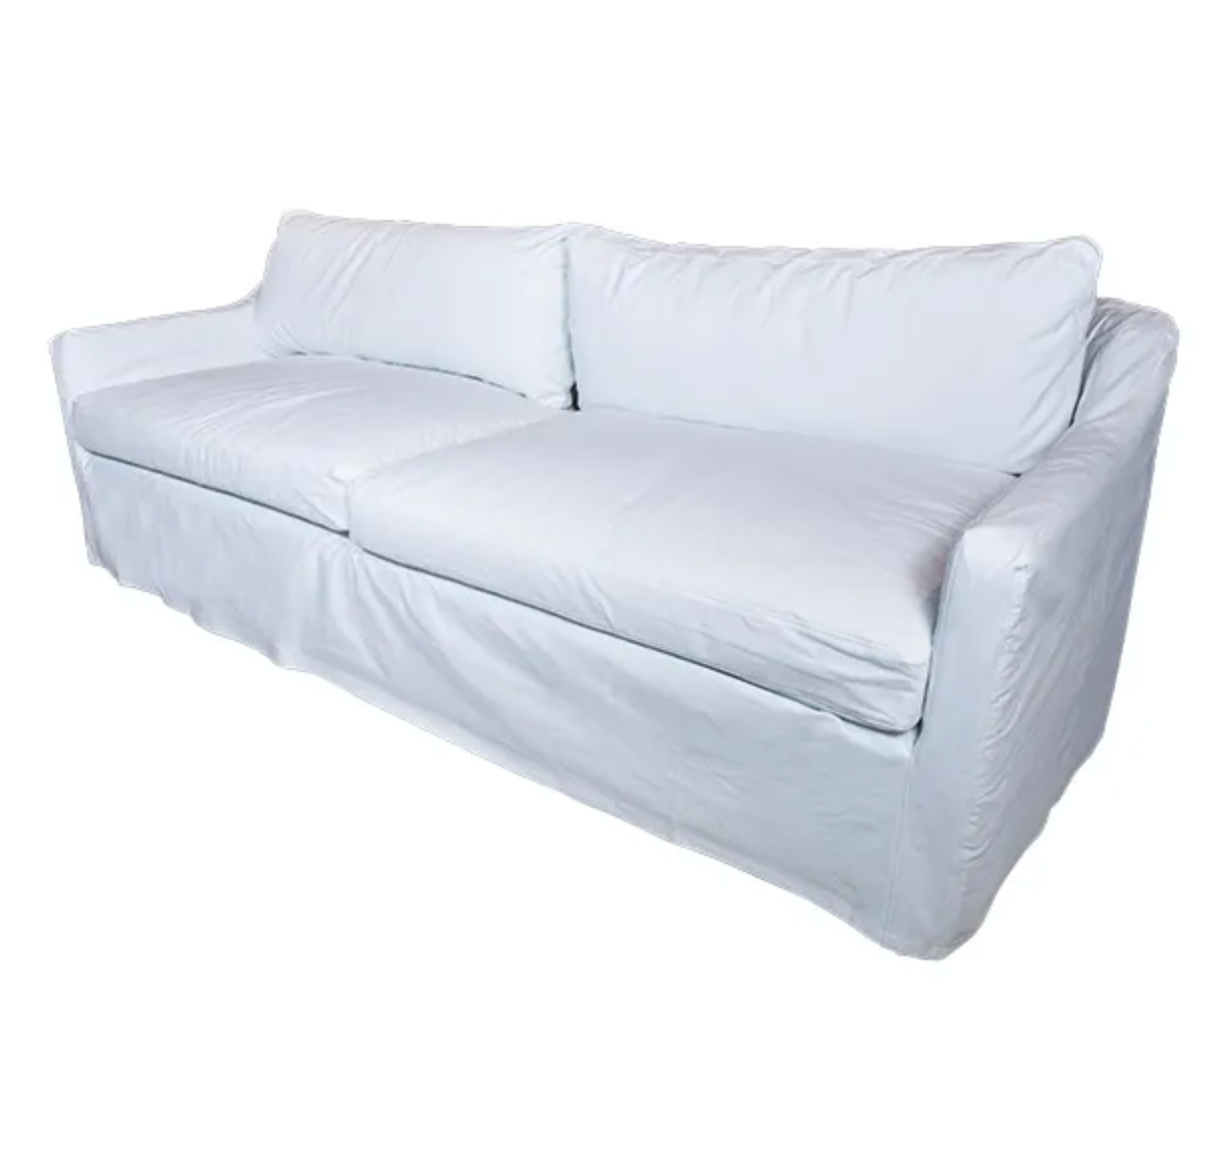 White Cotton Slipcovered Sofa